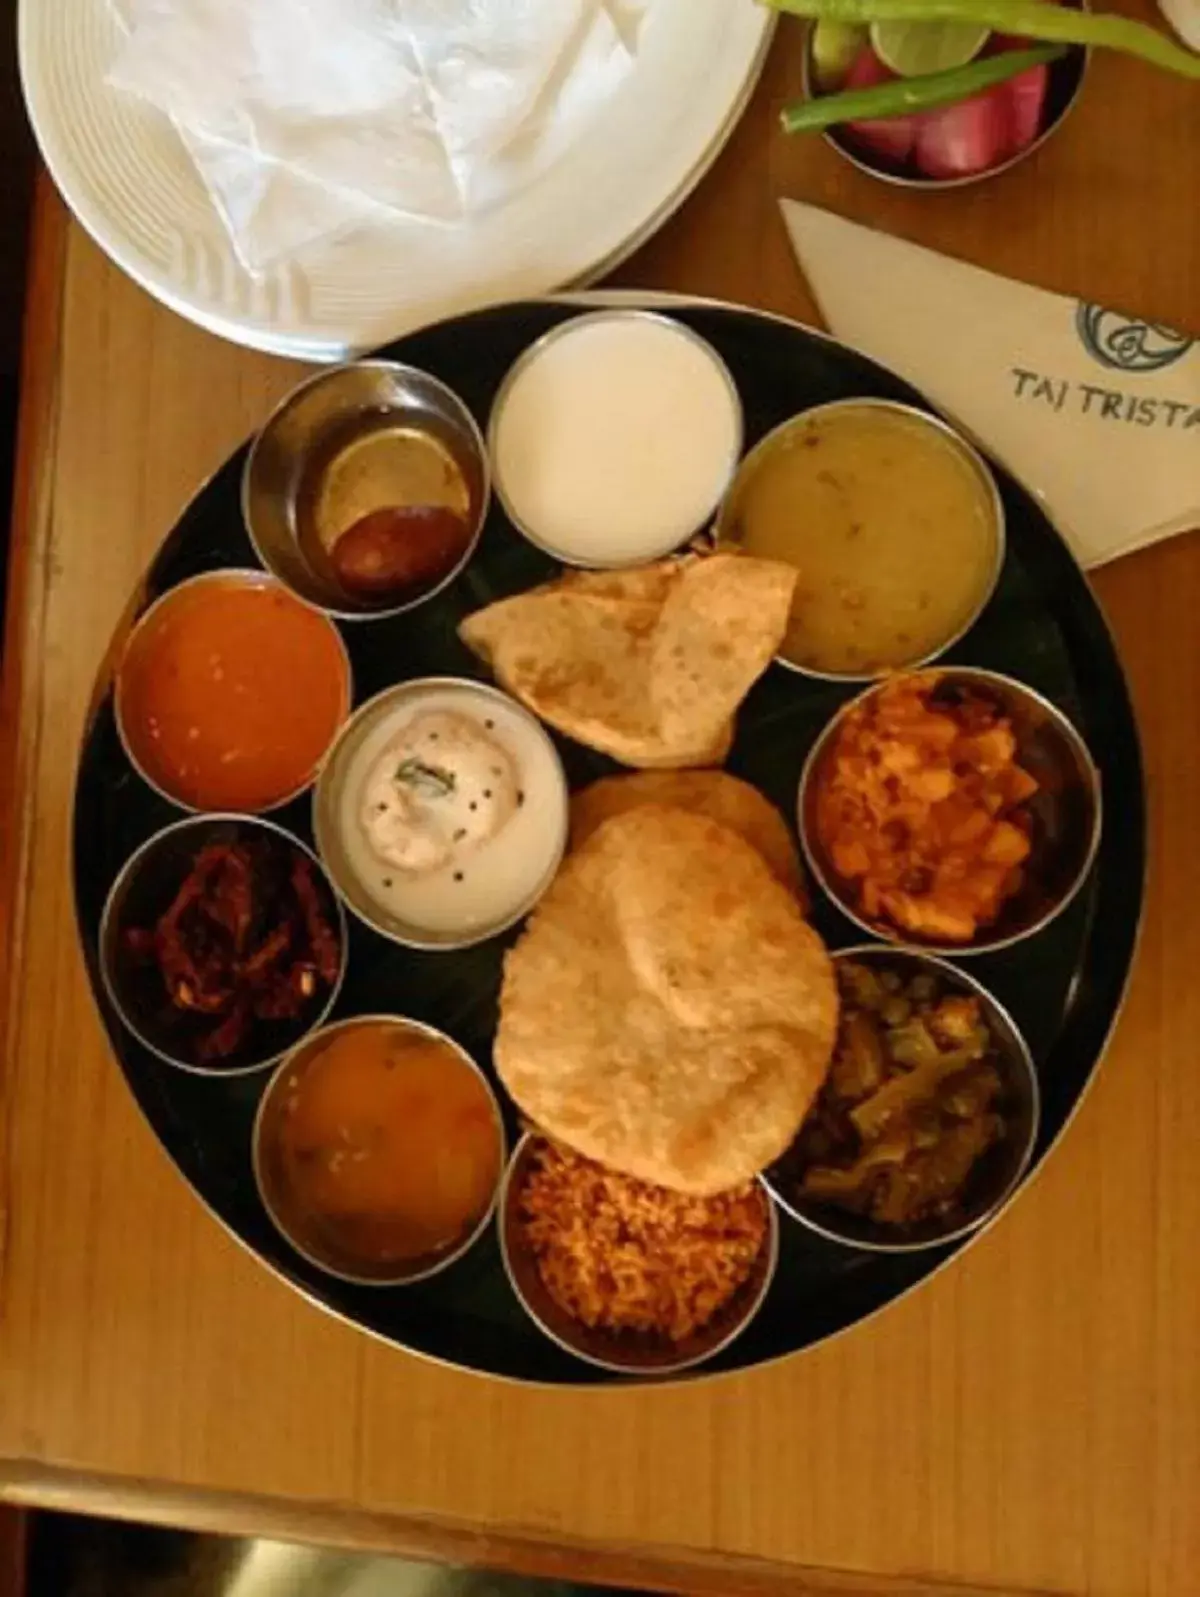 Breakfast in Taj Tristar